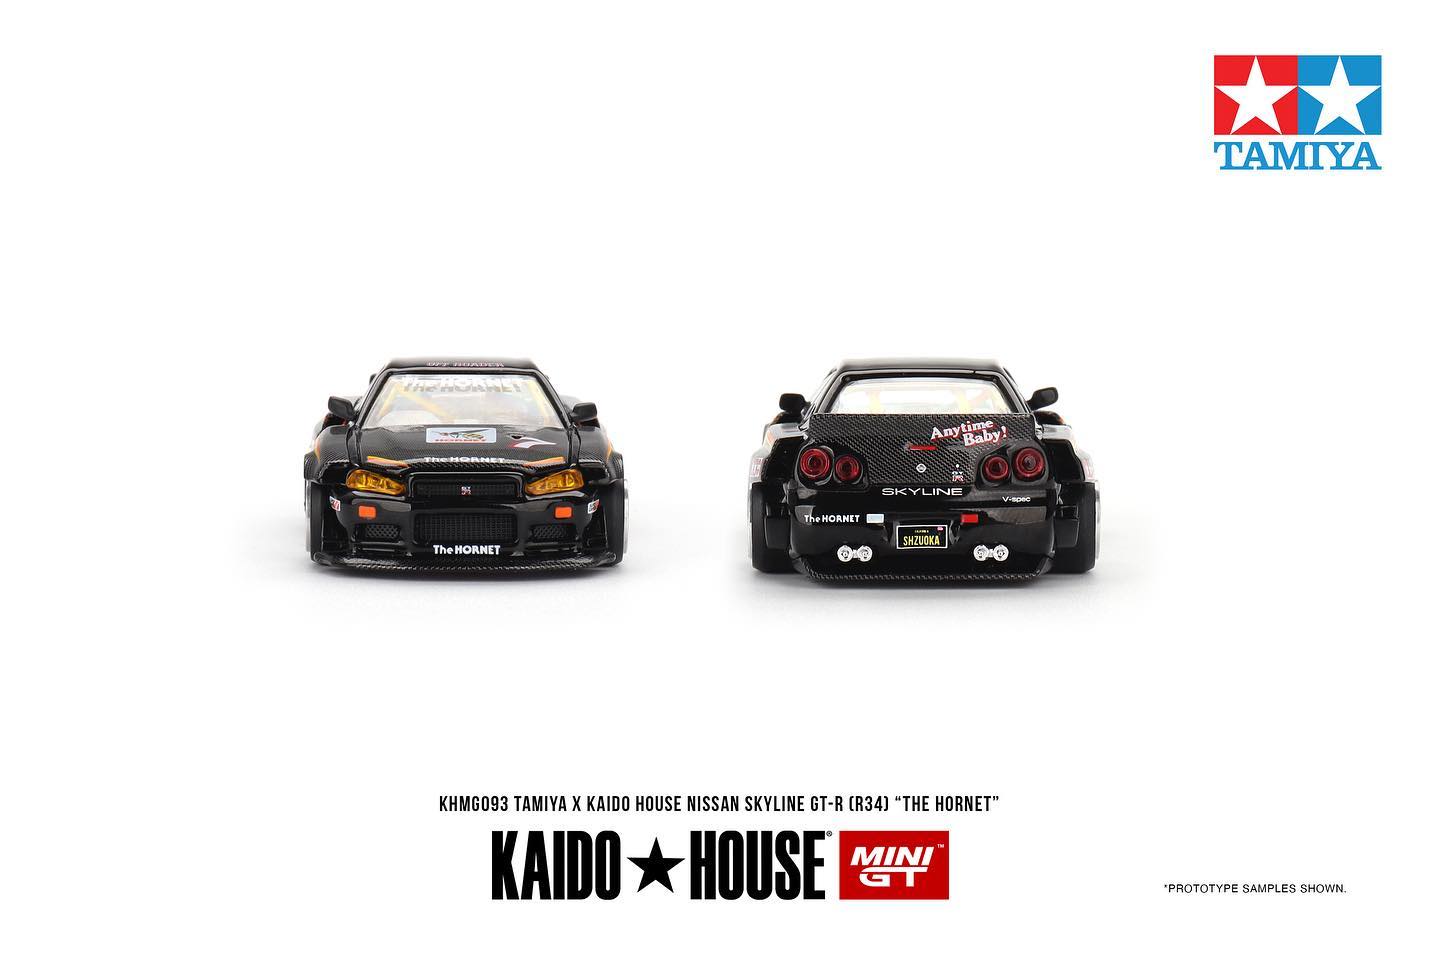 Mini GT x Kaido House x Tamiya Nissan Skyline GT-R (R34) "The Hornet"